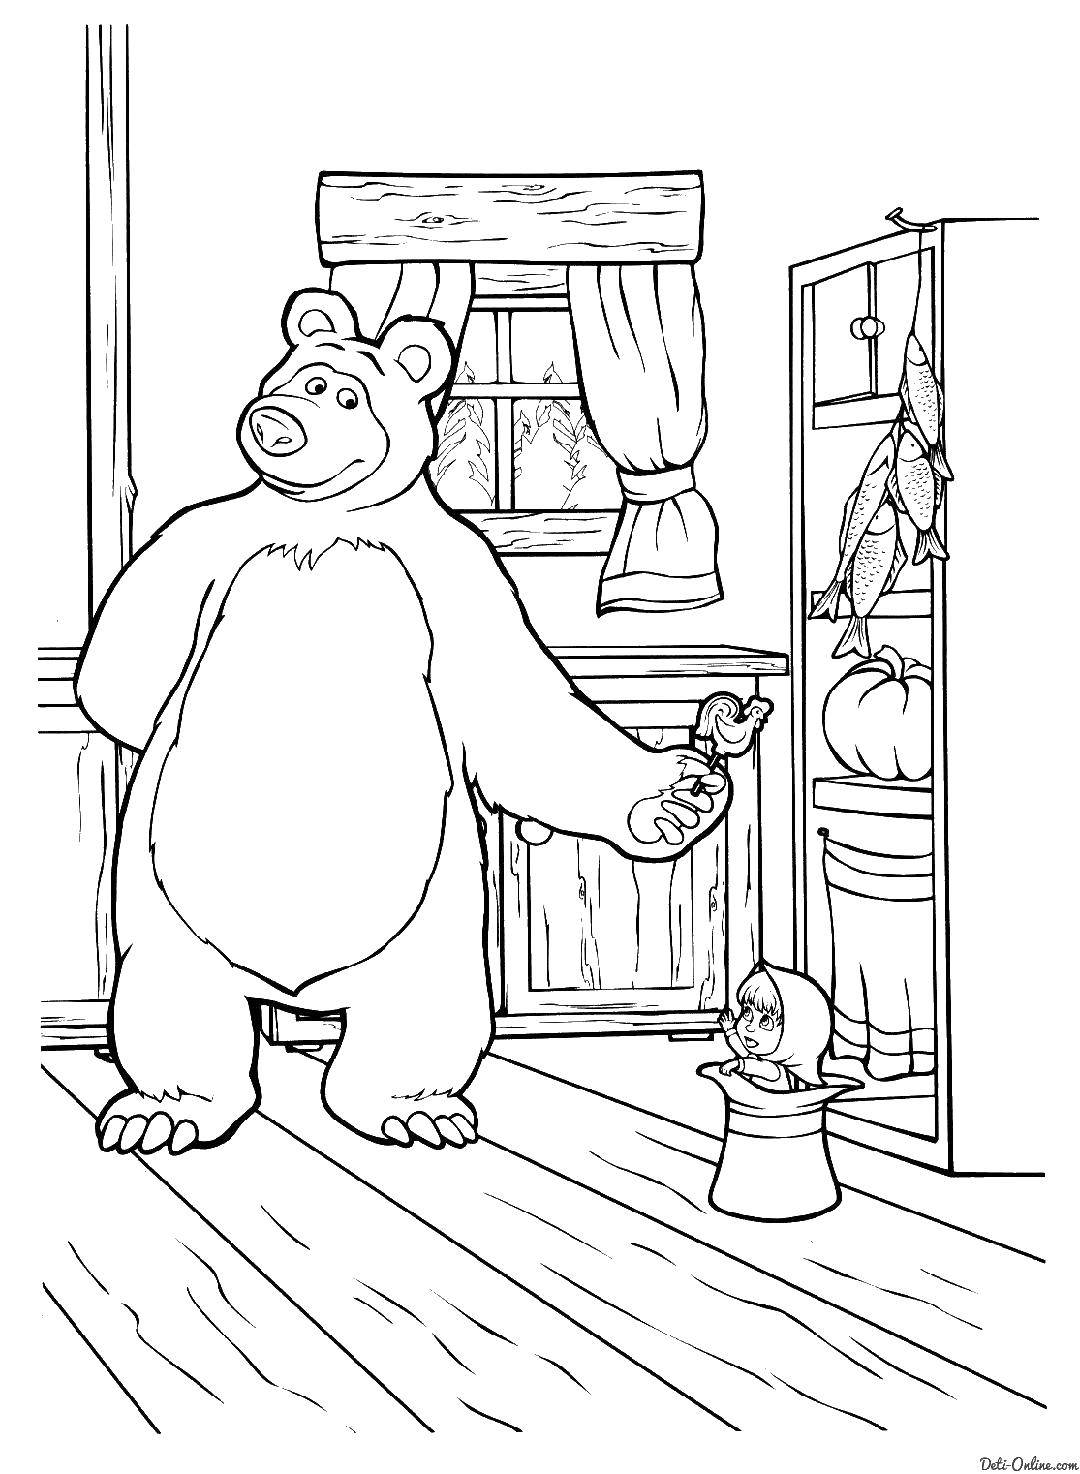 Раскраски для детей про озорную Машу из мультфильма Маша и медведь  Маша и медведь